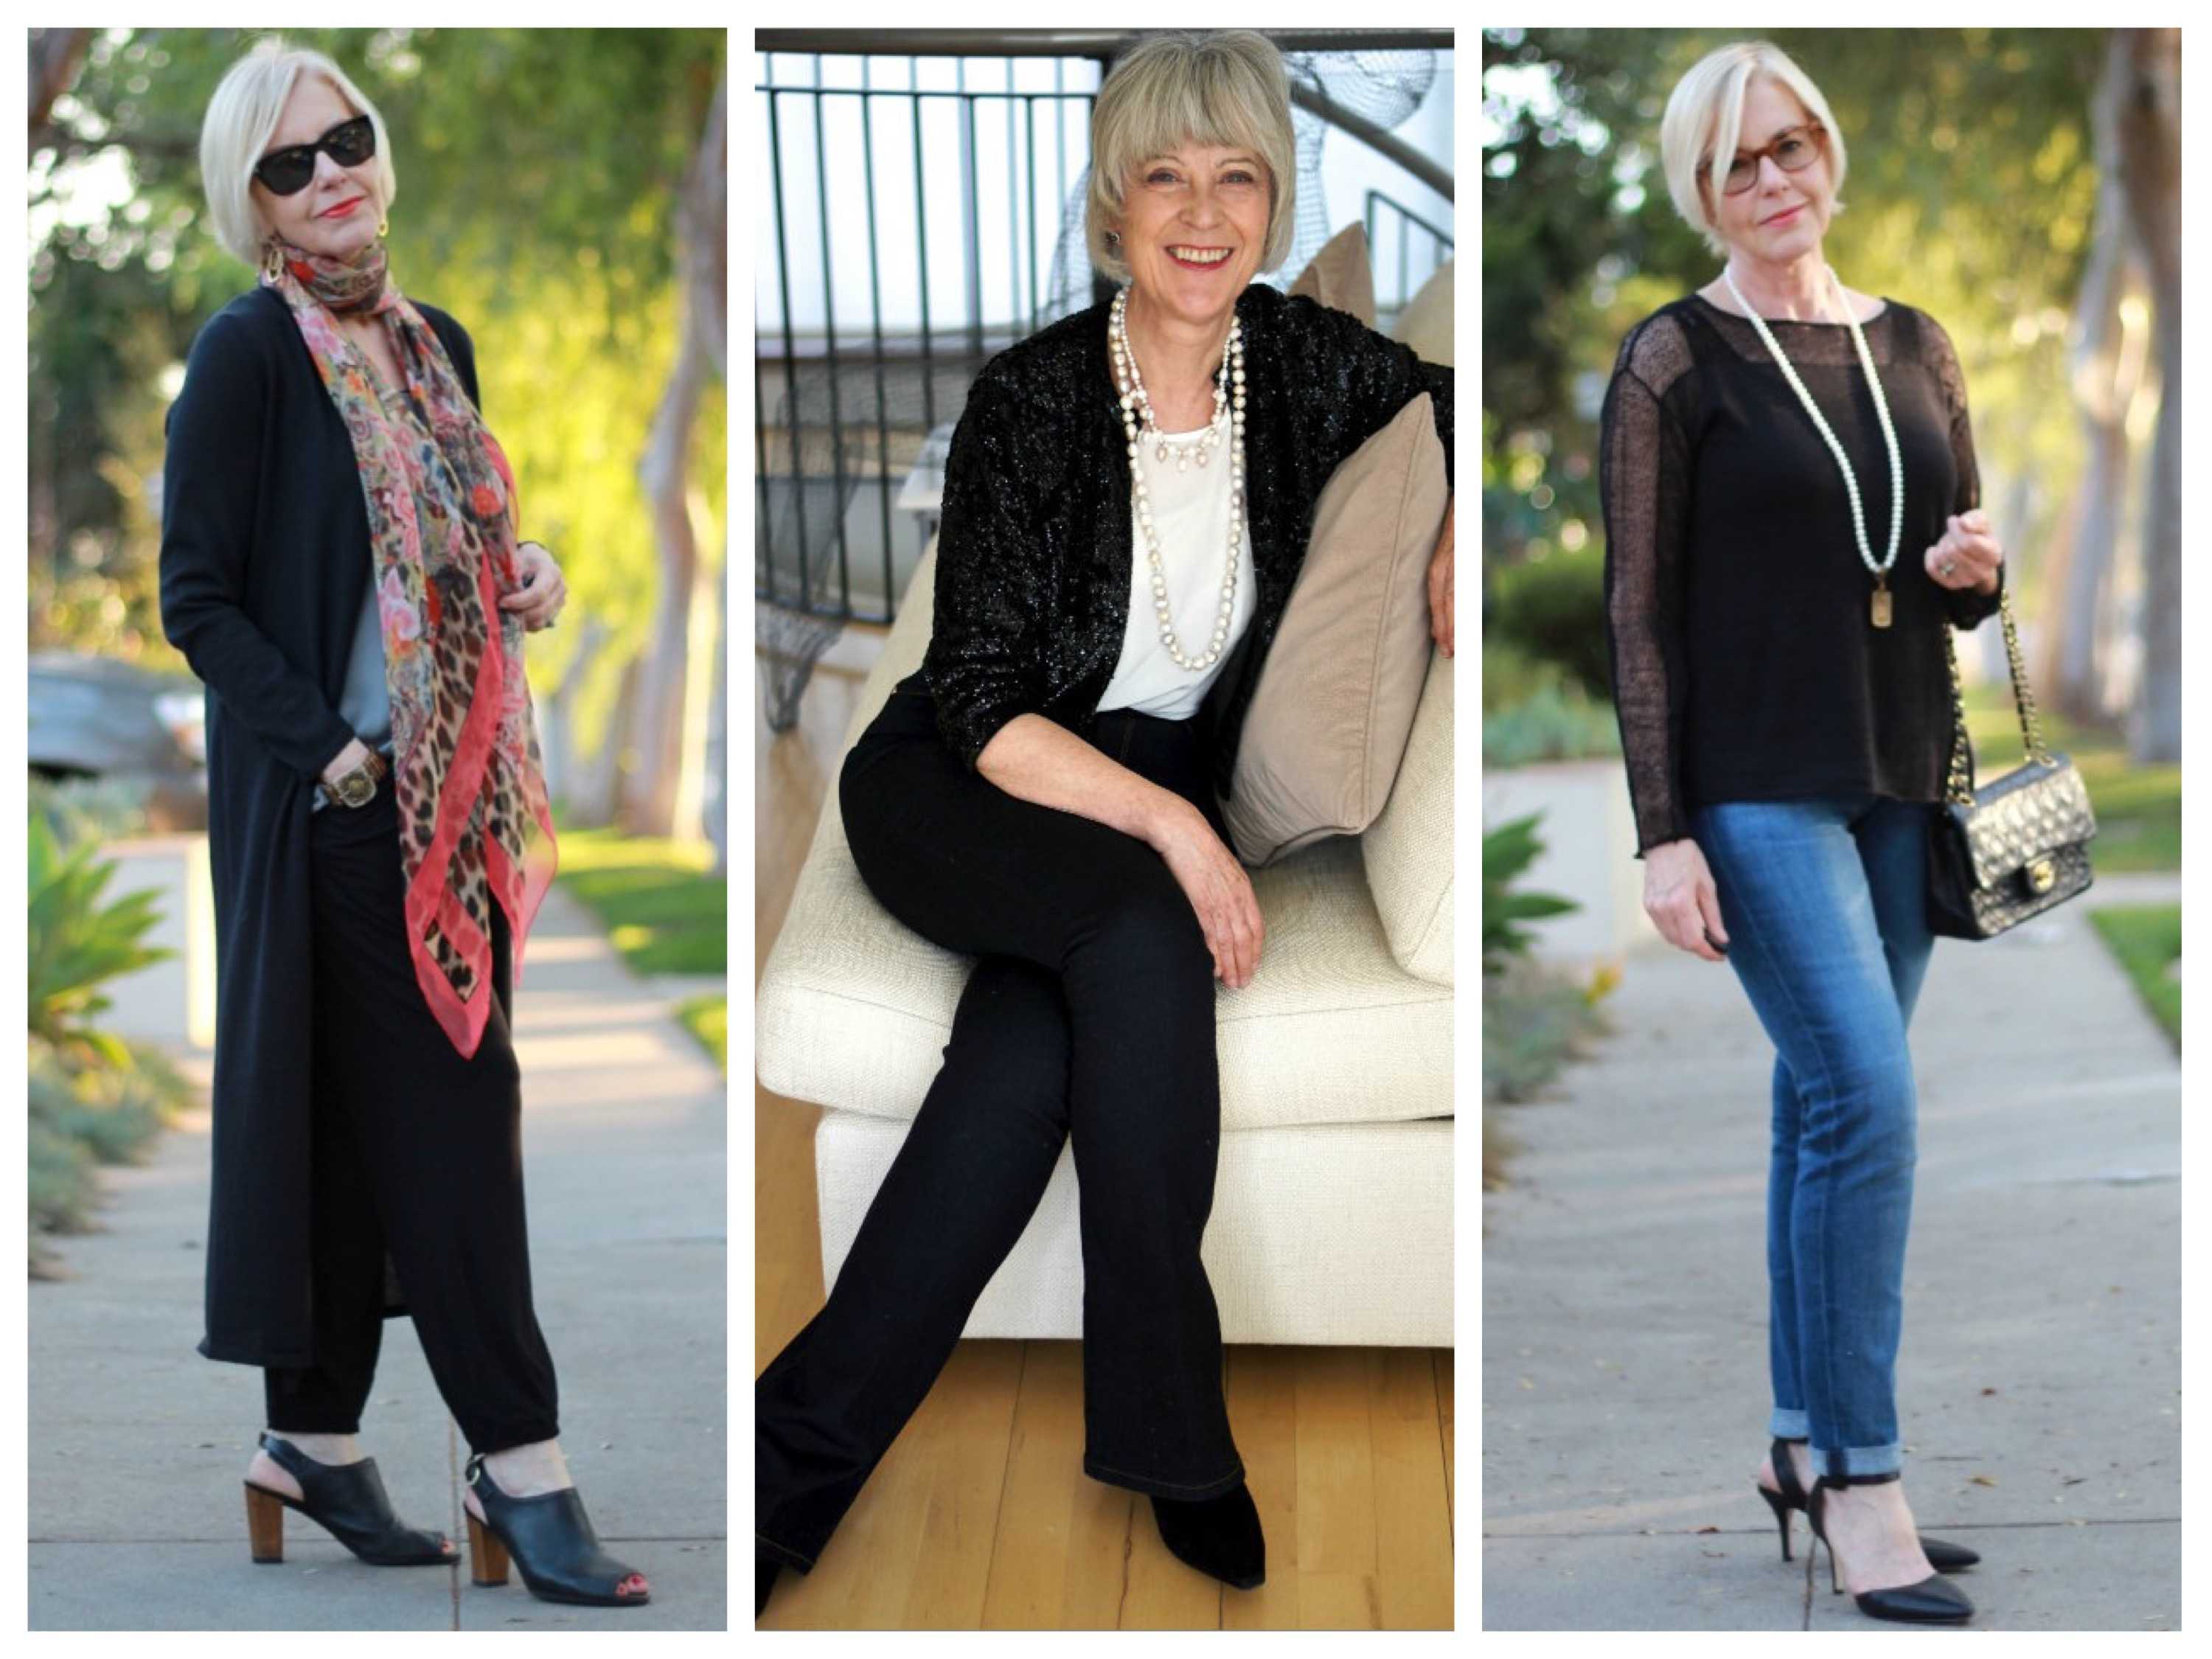 Стиль для женщины 50 лет: советы по составлению гардероба и фото модных образов